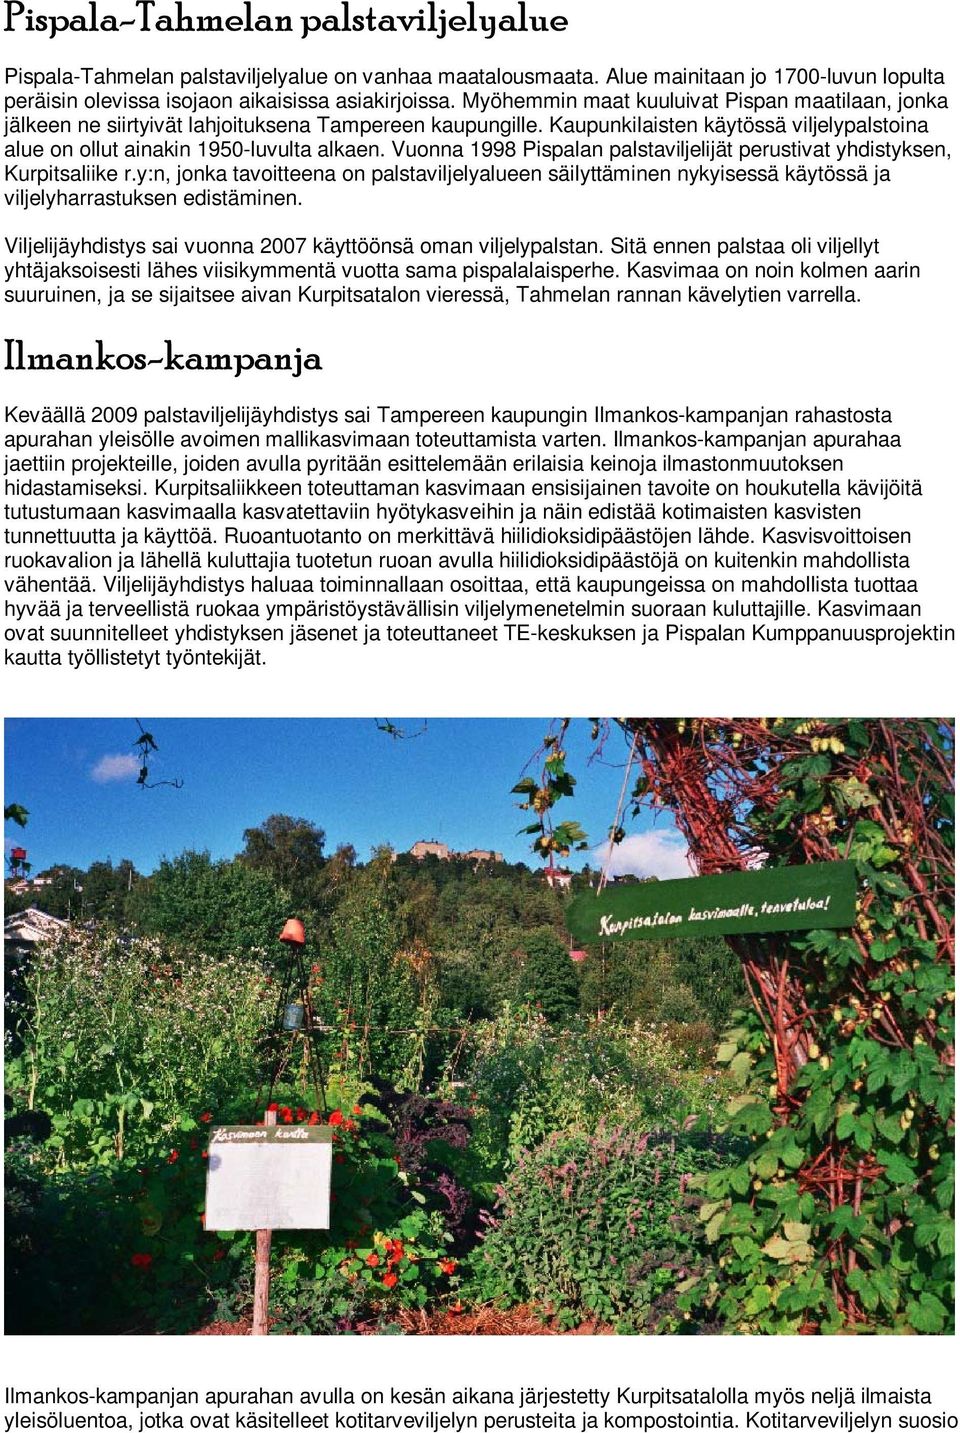 Vuonna 1998 Pispalan palstaviljelijät perustivat yhdistyksen, Kurpitsaliike r.y:n, jonka tavoitteena on palstaviljelyalueen säilyttäminen nykyisessä käytössä ja viljelyharrastuksen edistäminen.